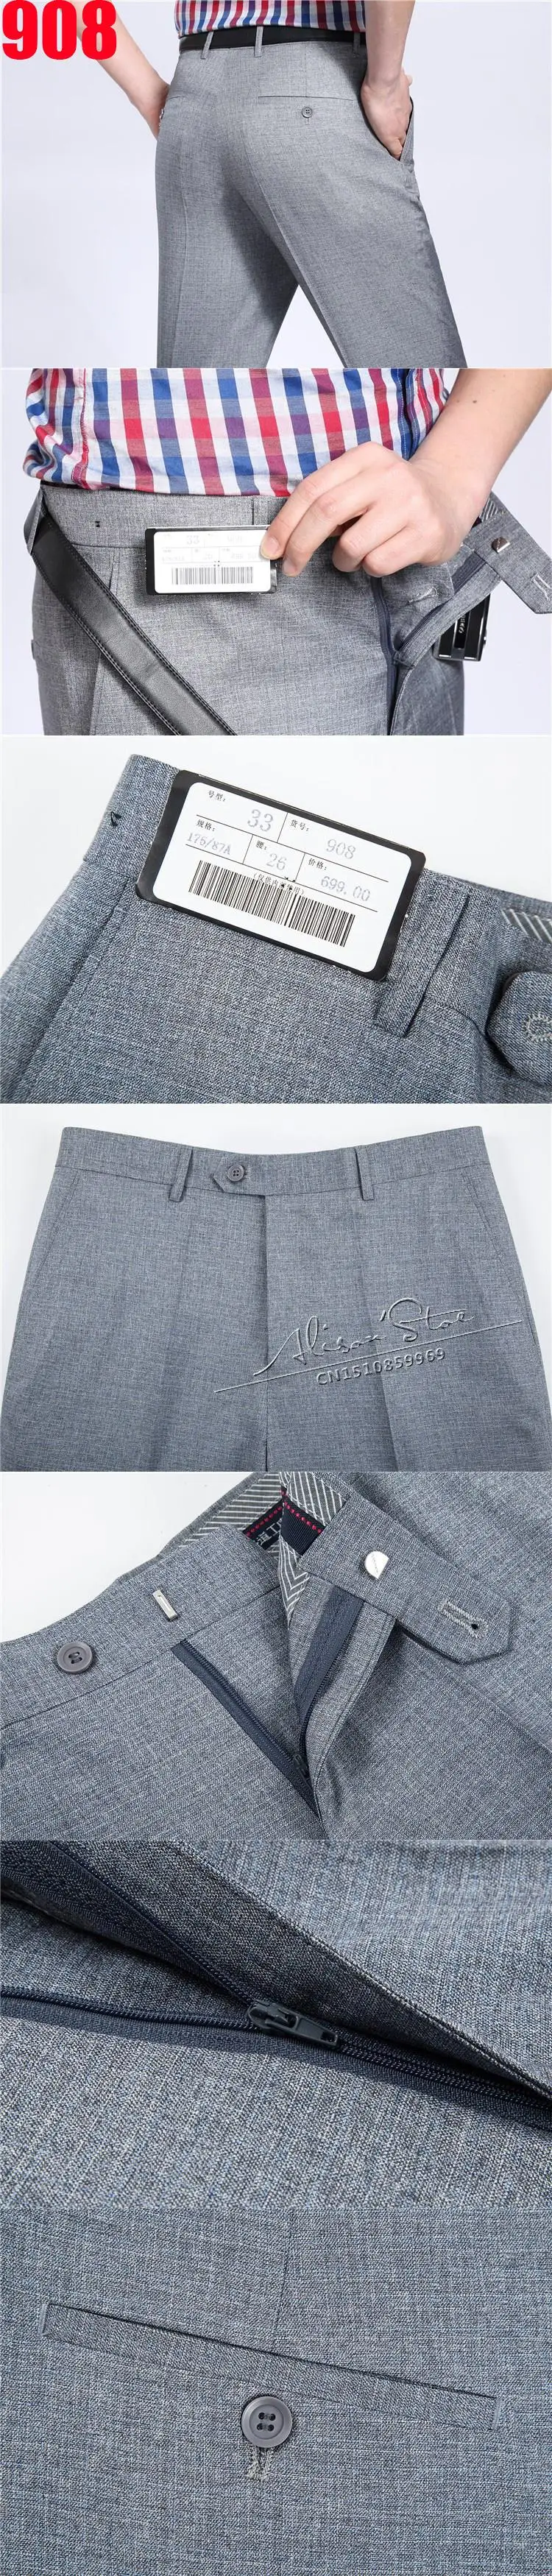 Mu Yuan Yang Новое поступление шелковые брюки против морщин глажка брюки для мужчин летние тонкие мужские костюмы брюки высокого качества